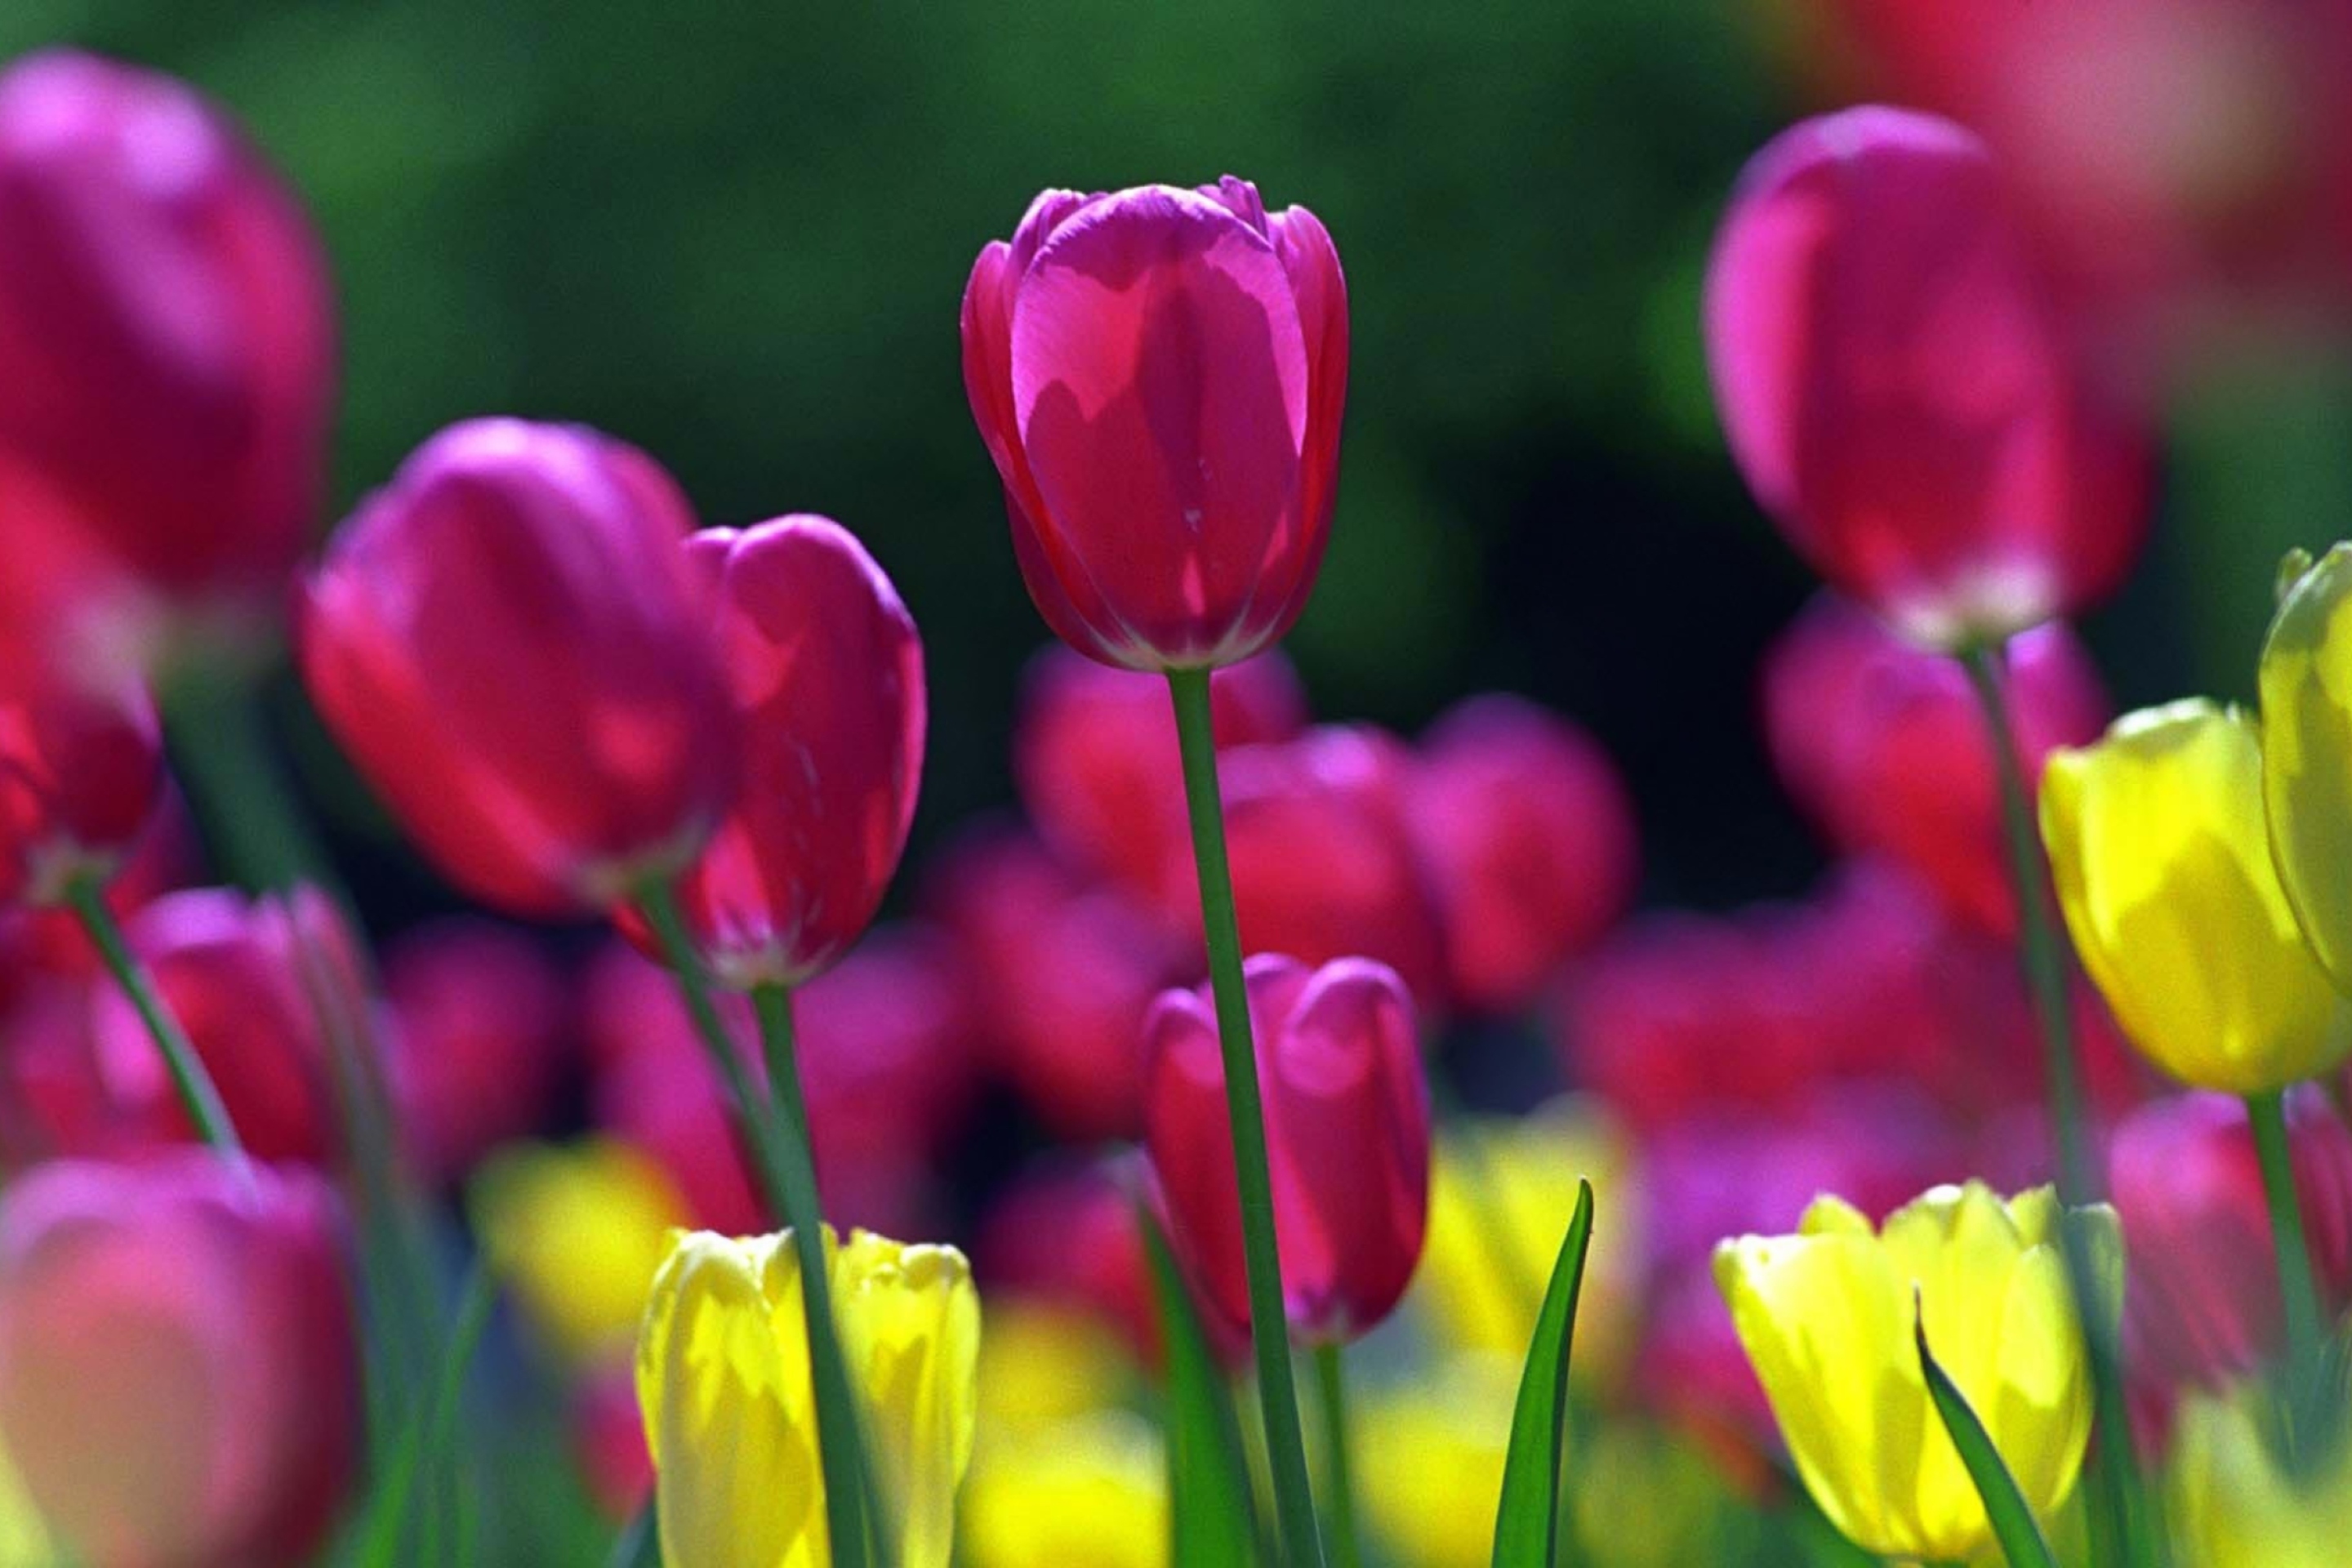 Обои на телефон красивые тюльпаны. Цветы тюльпаны. Яркие весенние цветы. Весенние цветы тюльпаны.